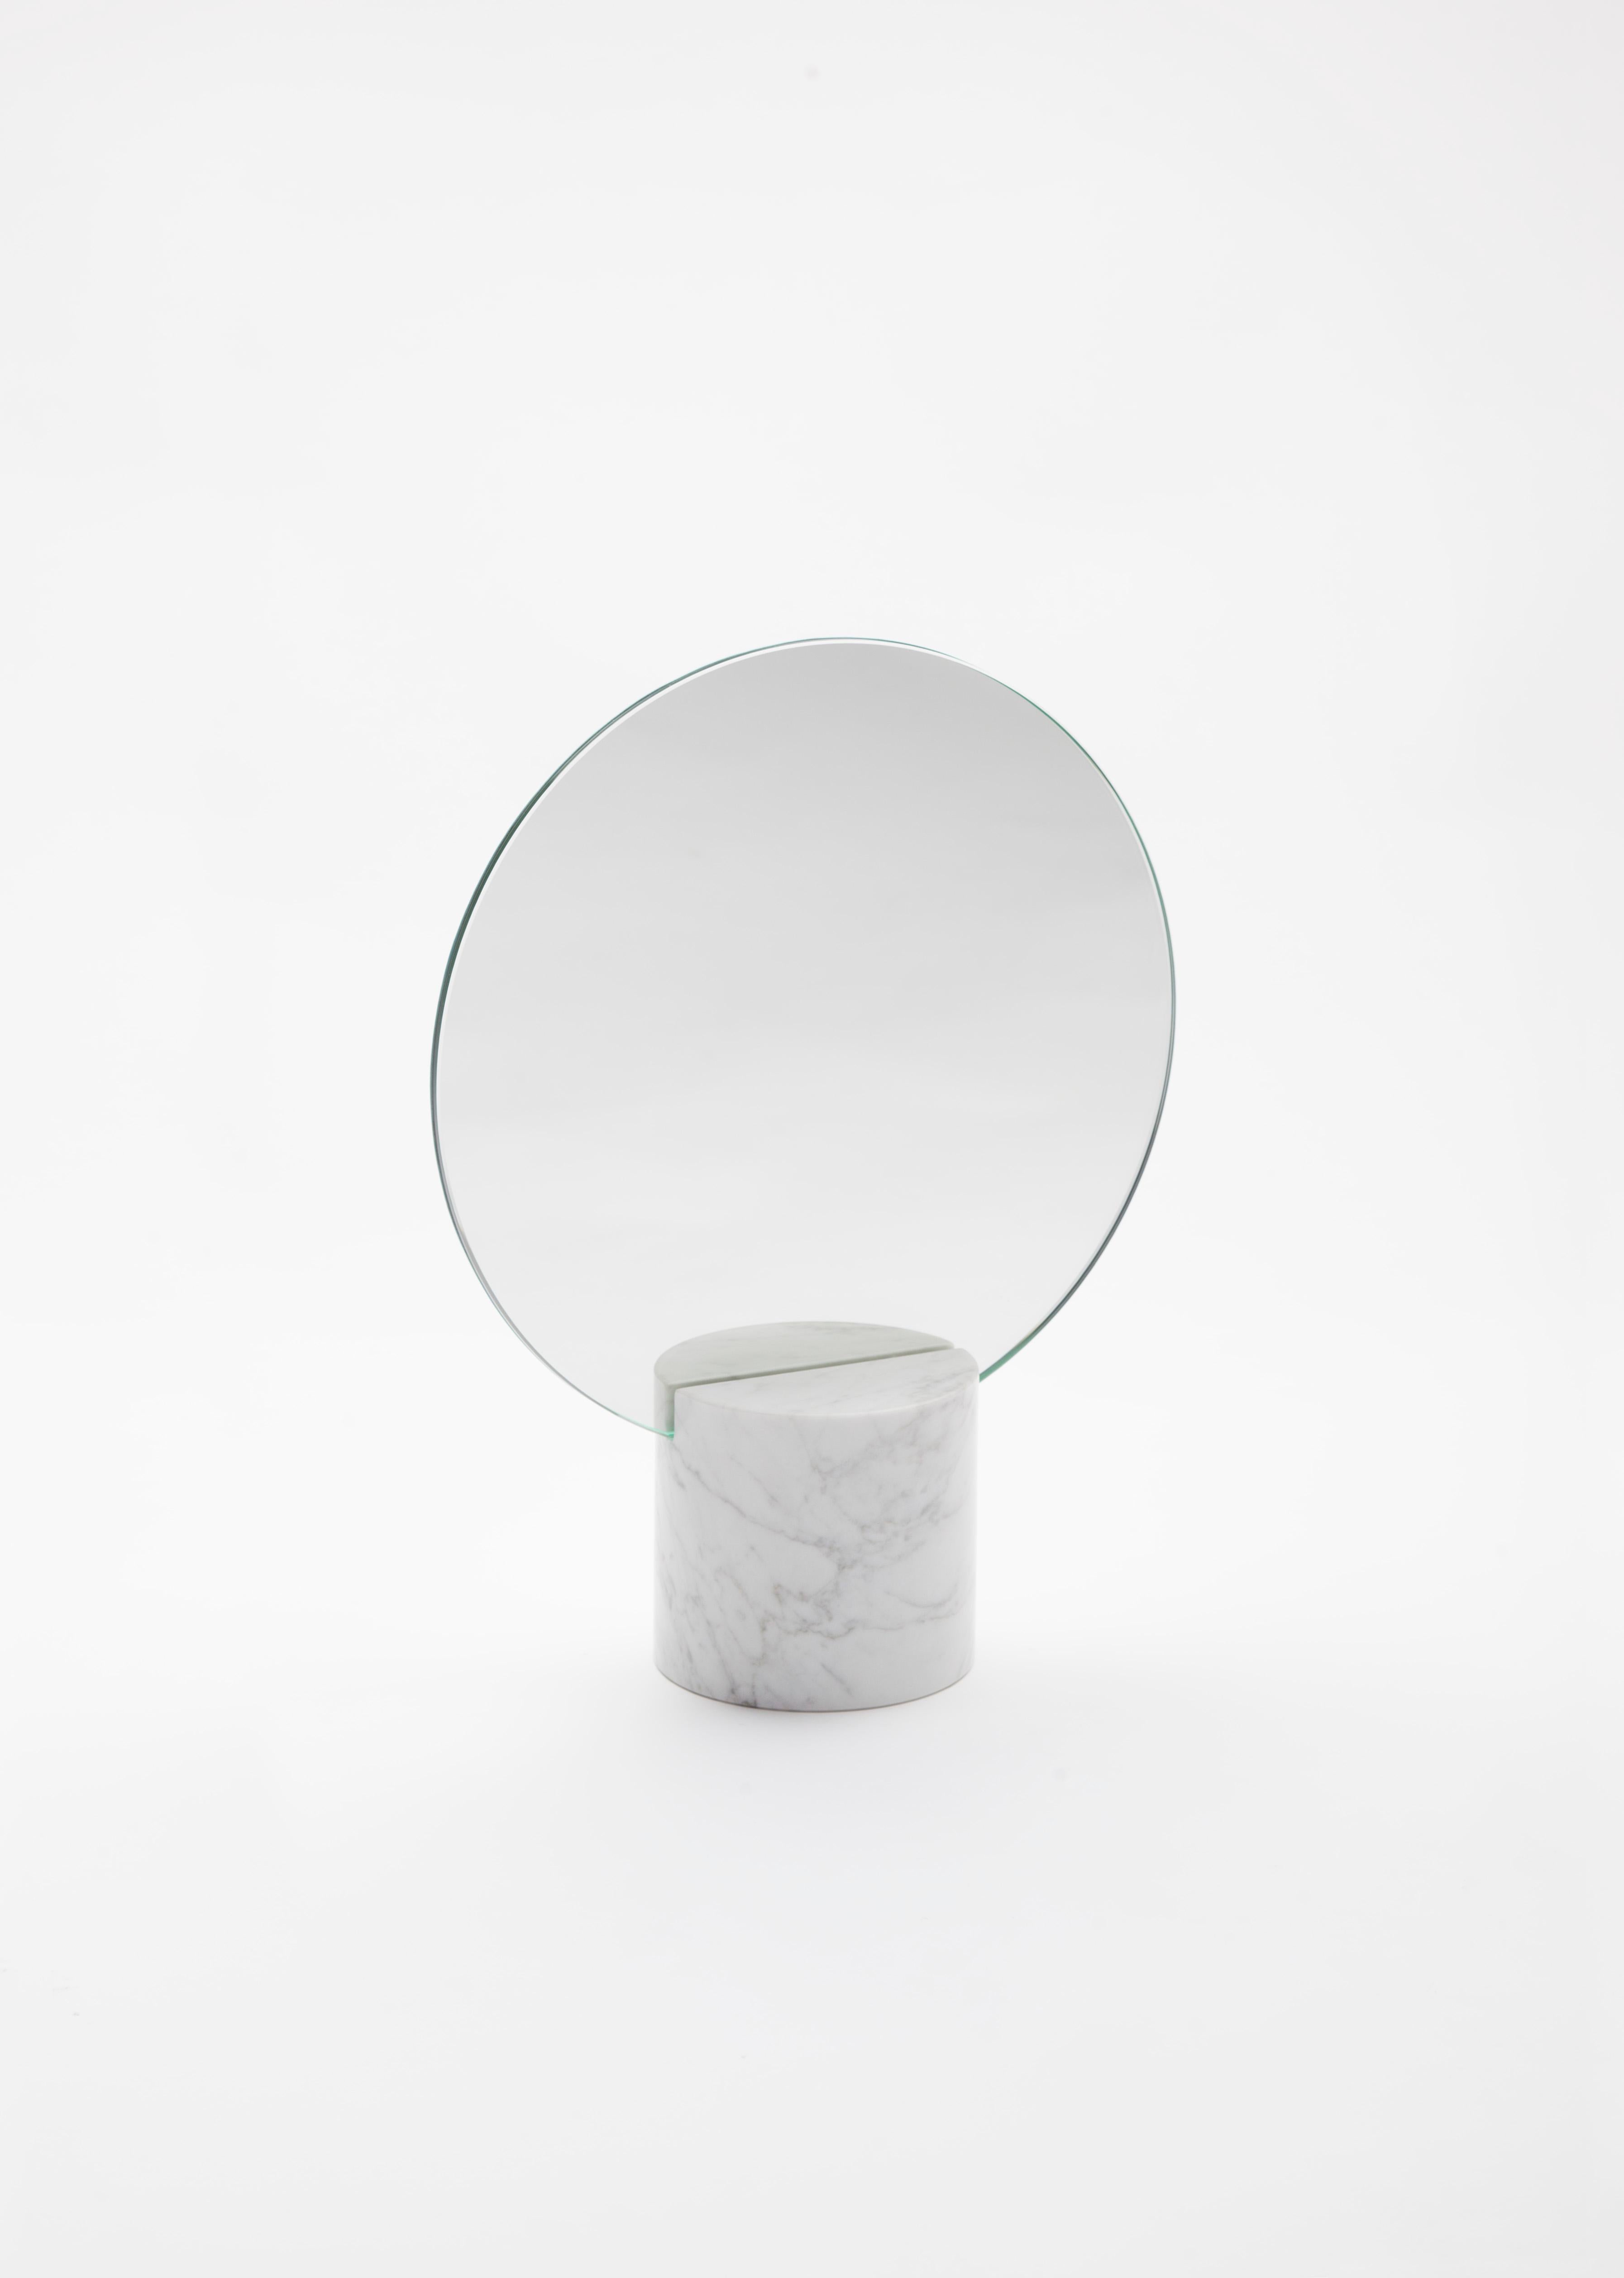 Der Marblelous Sun Mirror ist ein Spiegel im minimalistischen Stil, der aus einem Sockel aus behandeltem Carrara-Marmor besteht. Der hintere Teil des Spiegels ist aus massivem Kupfer gefertigt und mit speziellen Ölen behandelt, um ihn zu